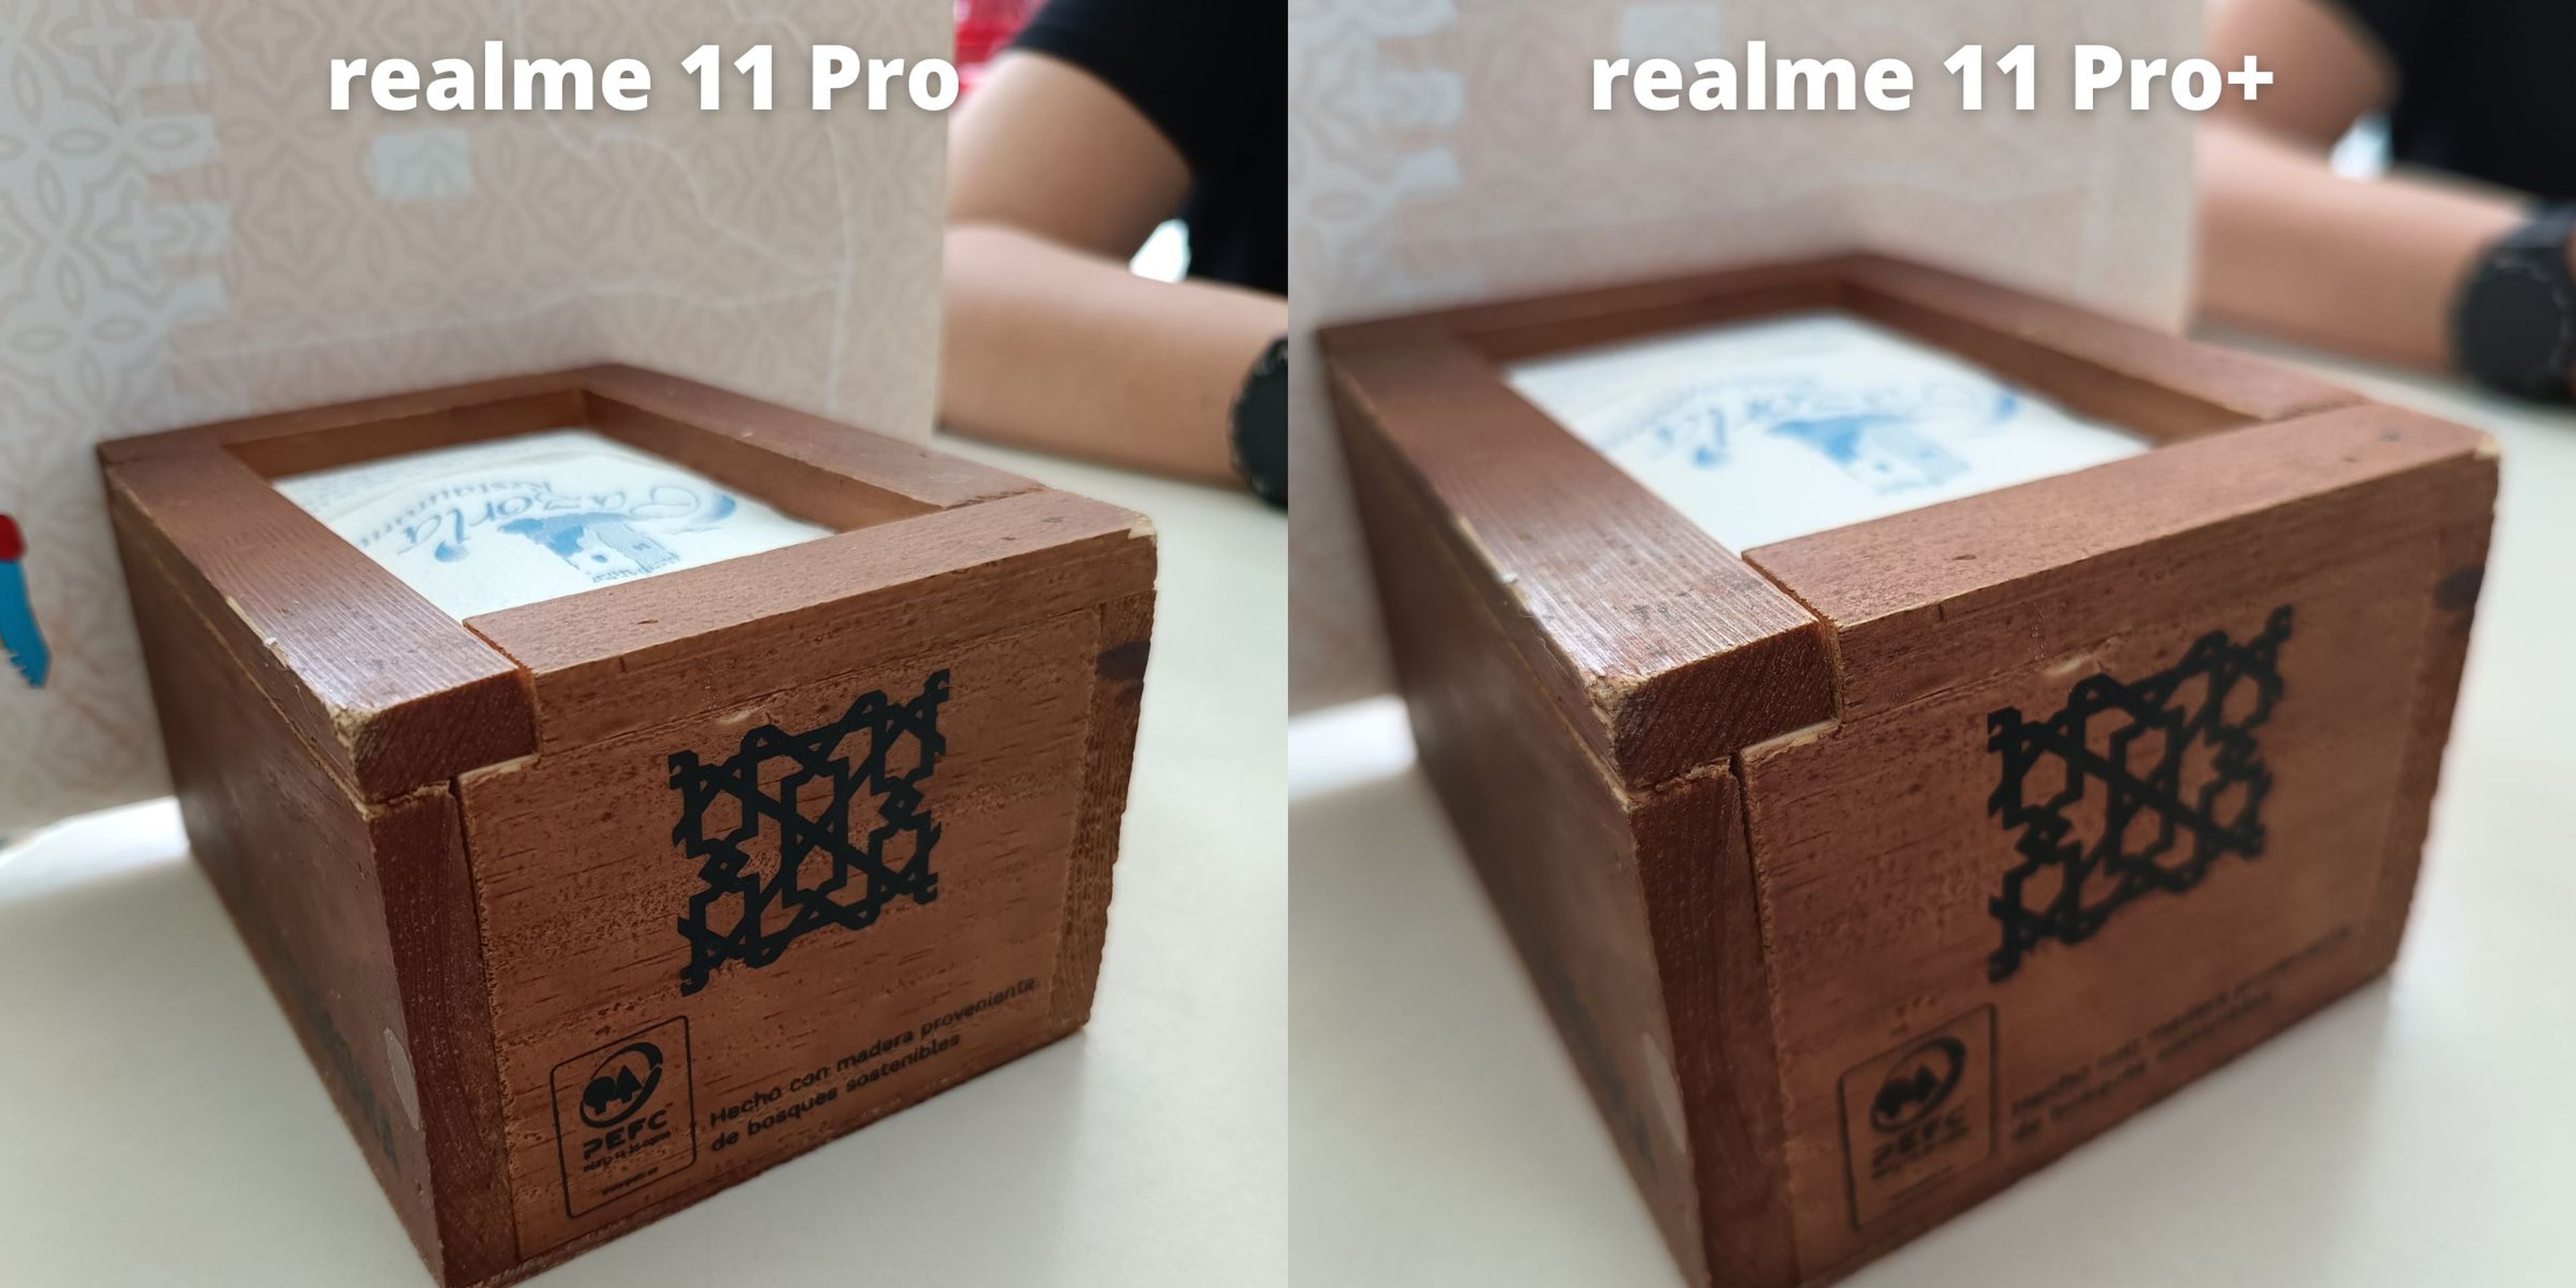 realme 11 Pro vs realme 11 Pro+